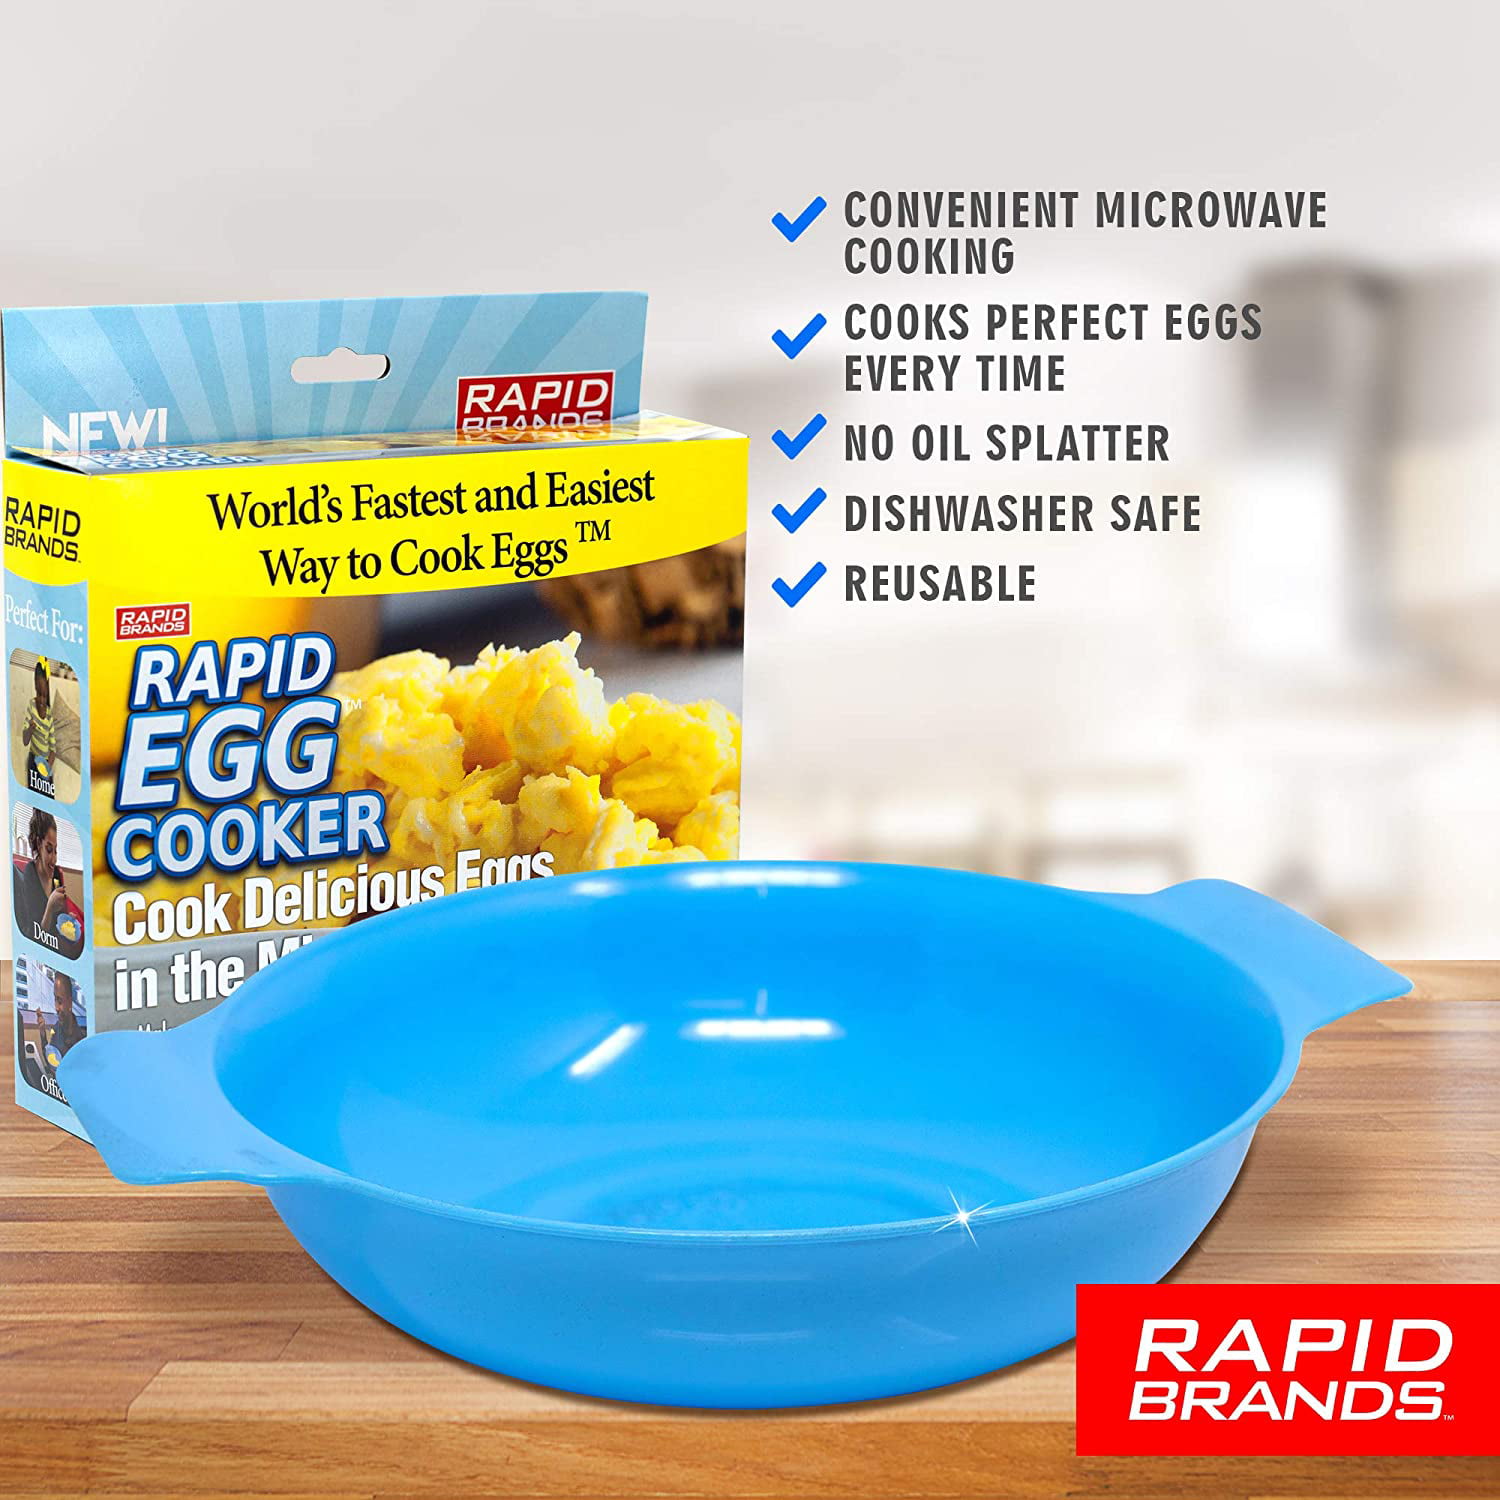 Blue Rapid Egg Cooker, zulily